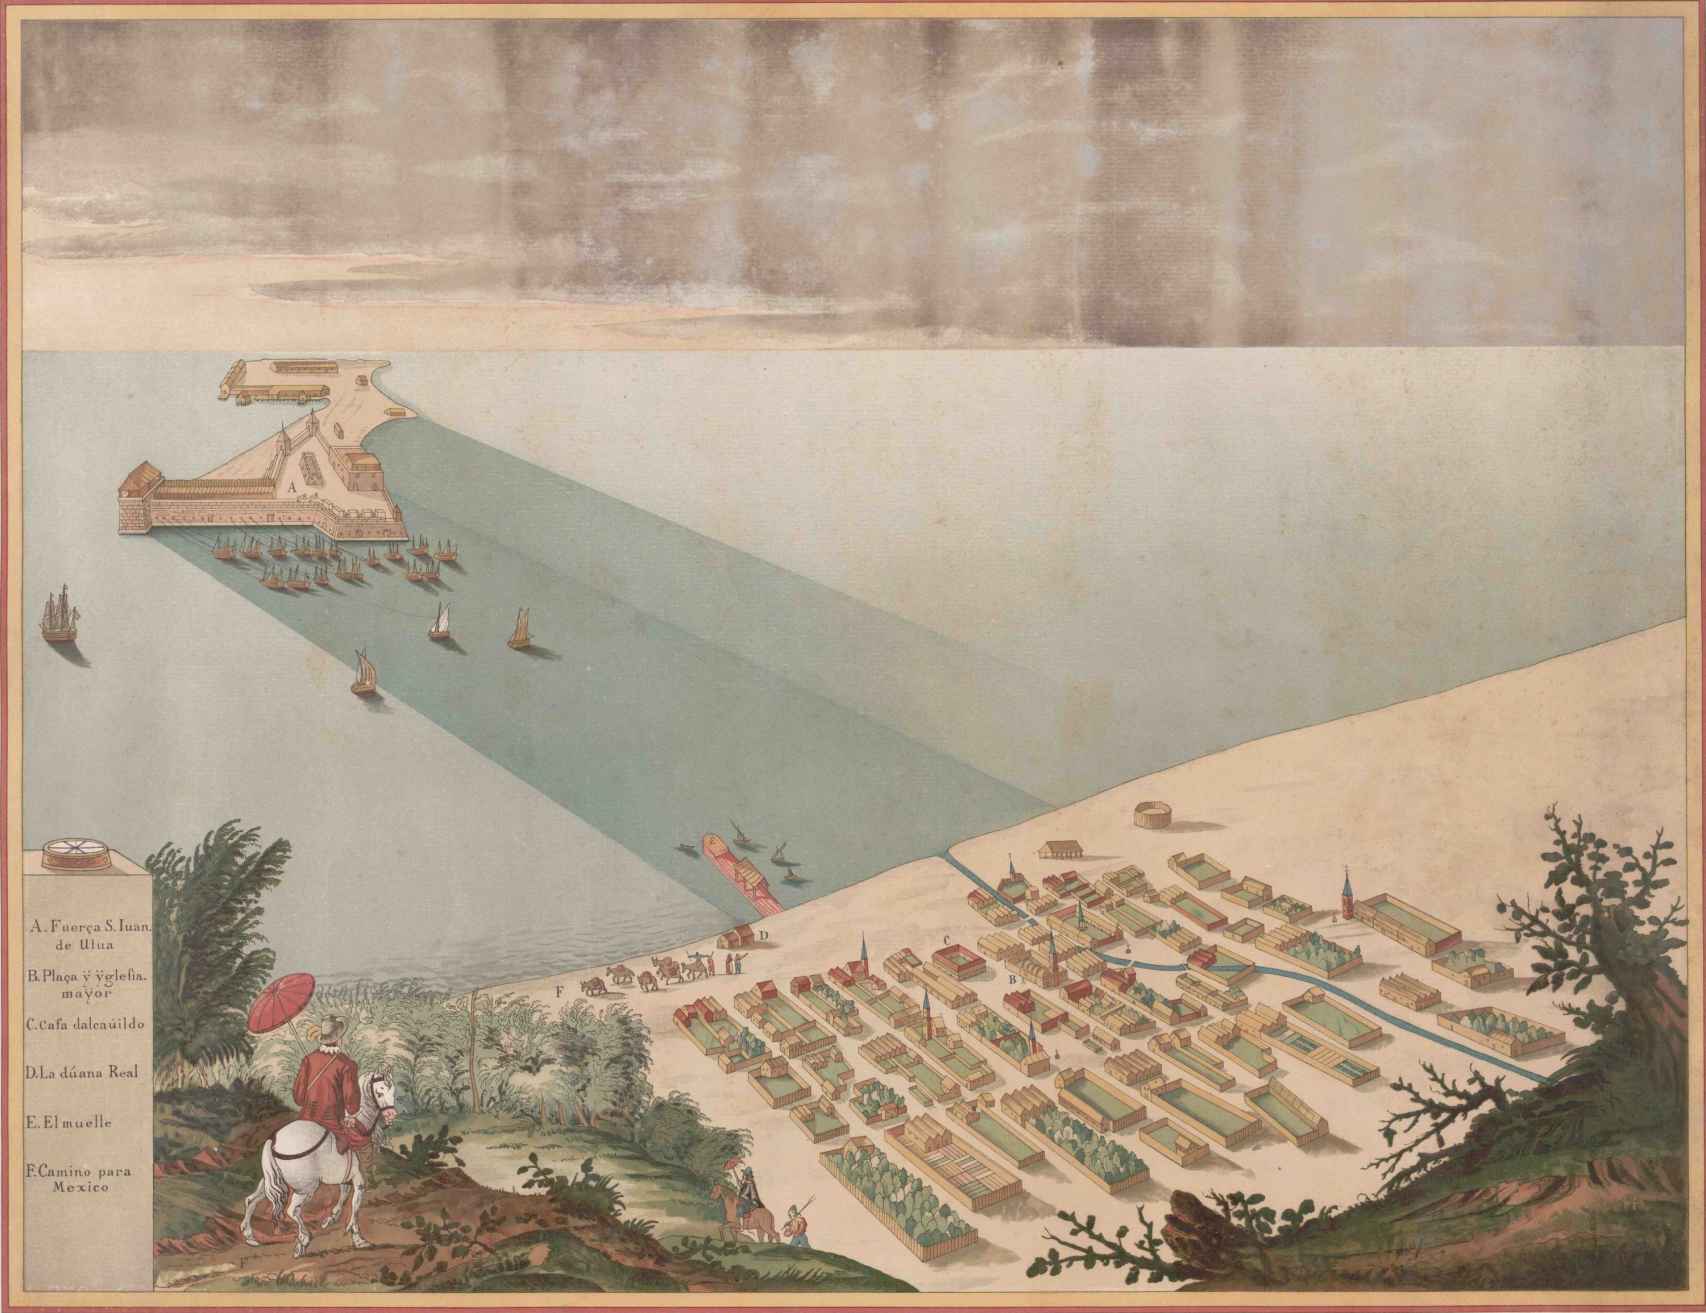 Puerto de Veracruz de Nueva España. Impresión de 1907 a partir de una pintura de Adrian Boot (1620).